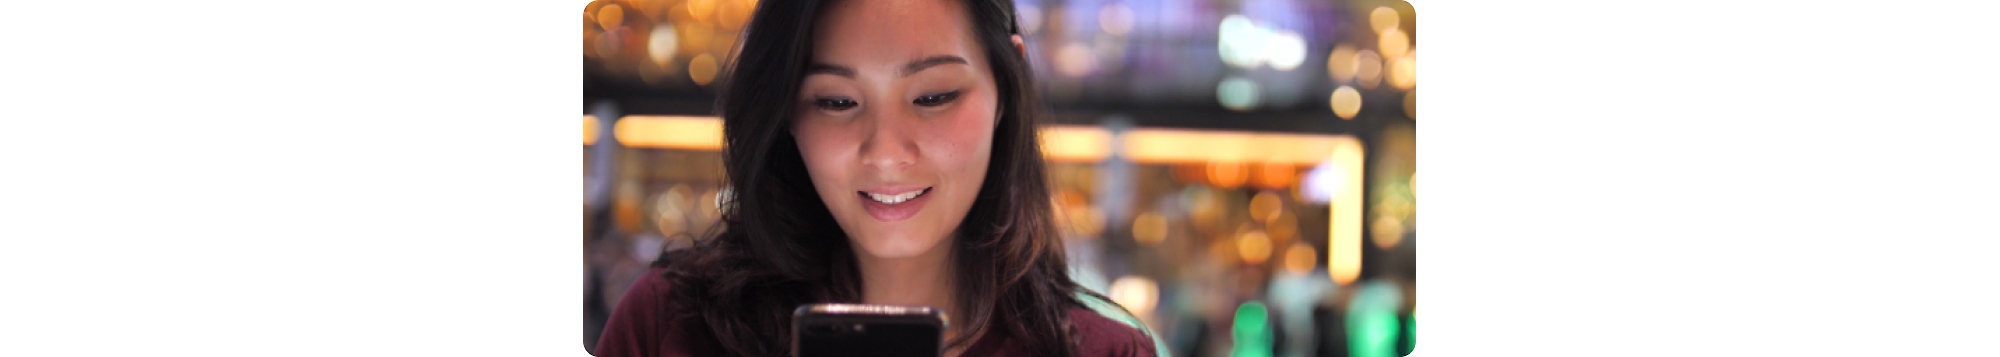 Una giovane donna asiatica che guarda il cellulare.